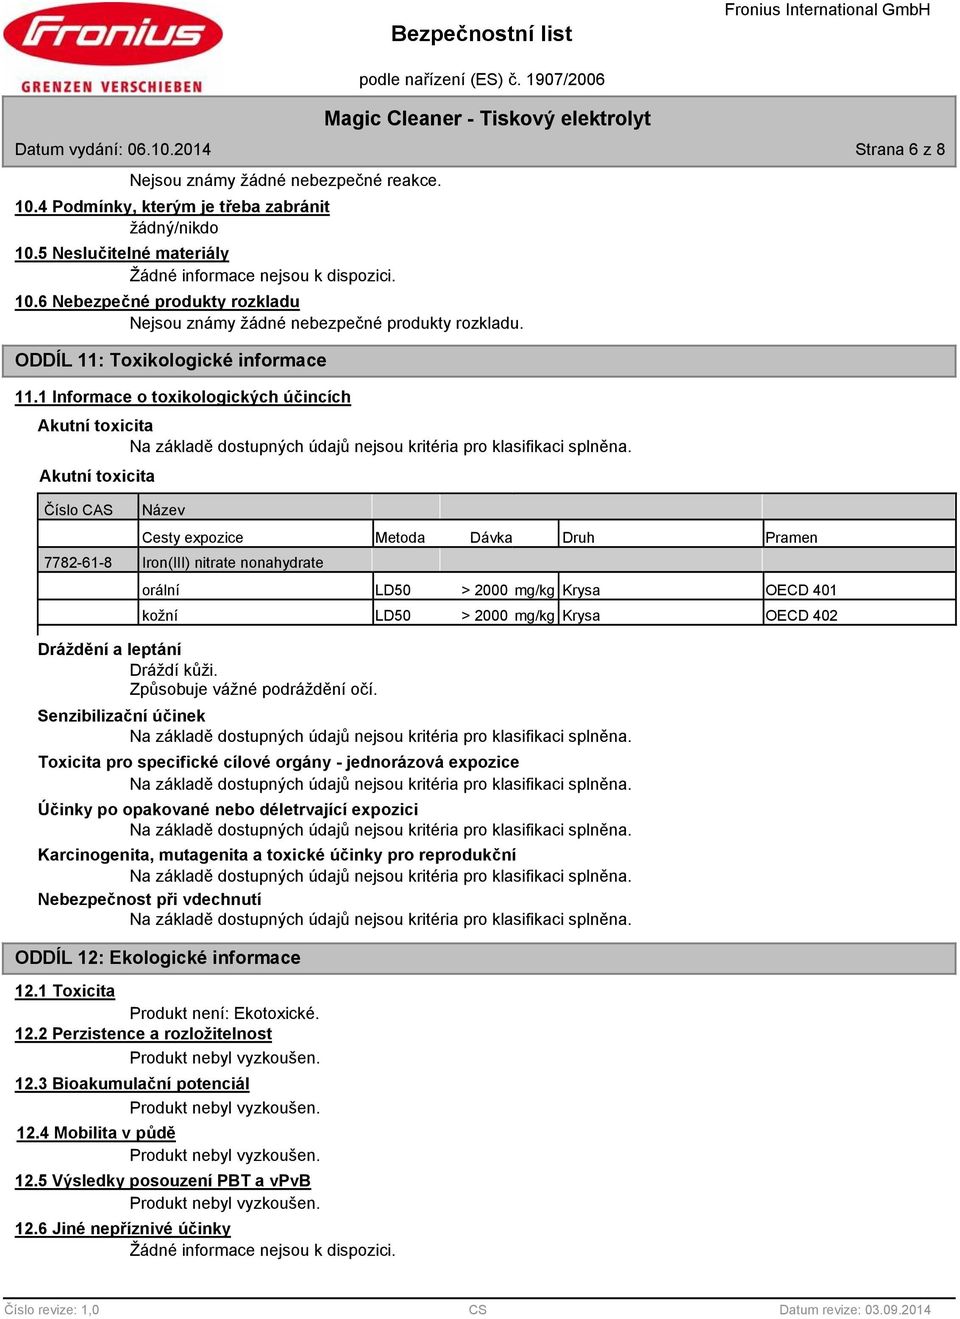 1 Informace o toxikologických účincích Akutní toxicita Akutní toxicita Číslo CAS Název Cesty expozice Metoda Dávka Druh Pramen 7782-61-8 Iron(III) nitrate nonahydrate orální LD50 > 2000 mg/kg Krysa